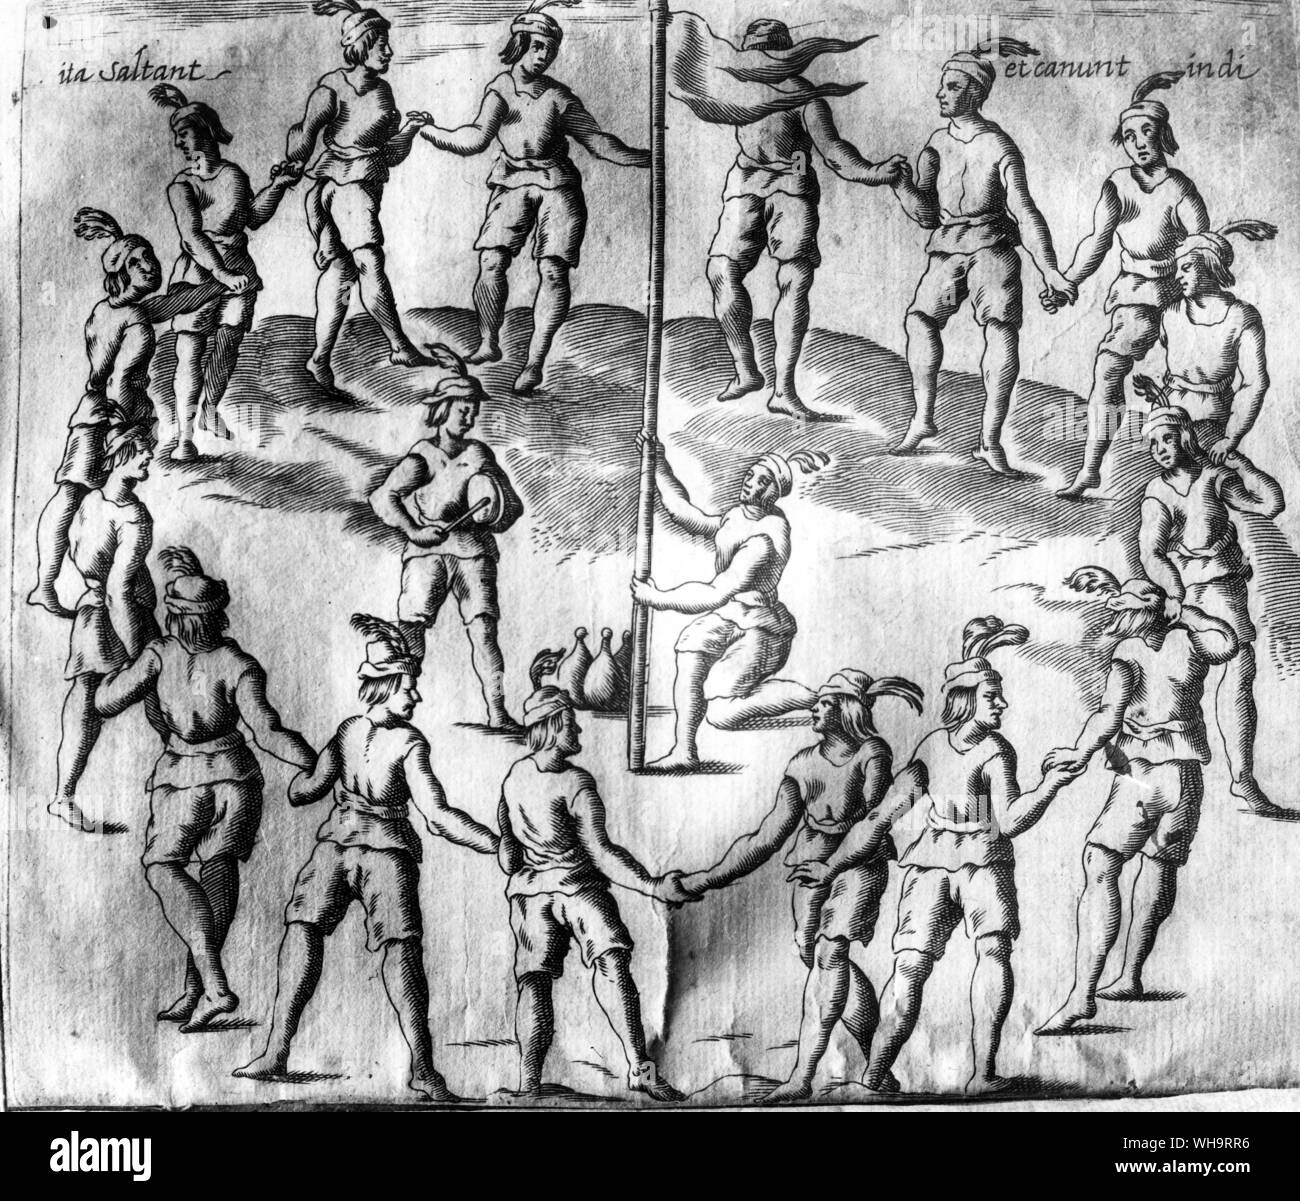 Chile: Tanz der Indianer um die Fahne und dem Klang der Trommel. Gravur von historischen Erzählungen des Königreichs Chile, Rom 1646, S. Alfonso de Ovalle (ein Jesuit in Santiago de Chile geboren). Stockfoto